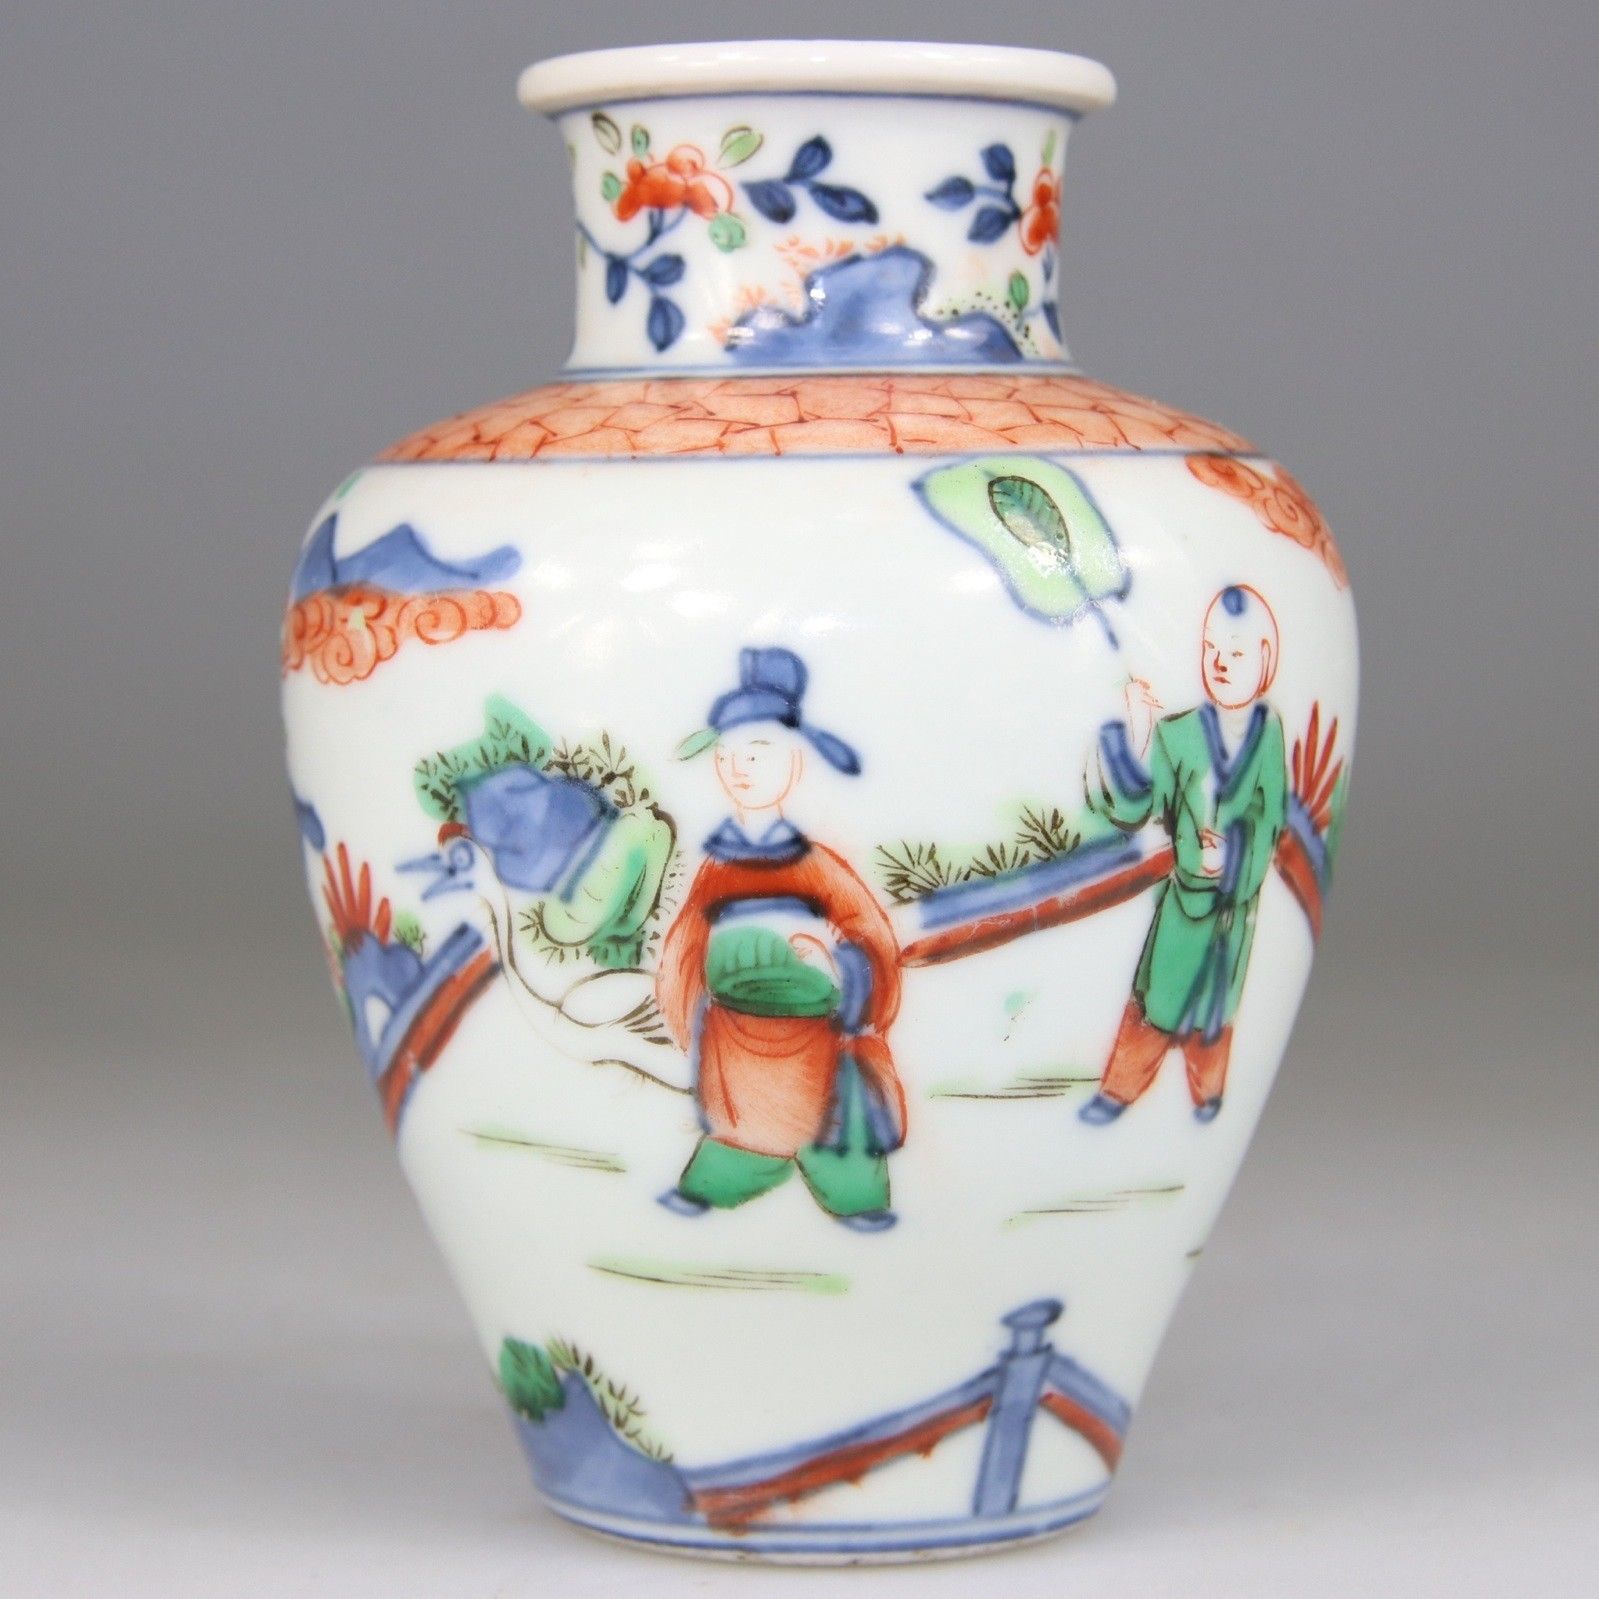 RARE Chinese Vase Famille Verte Wucai Porcelain Transitional Kangxi - Qing 17th